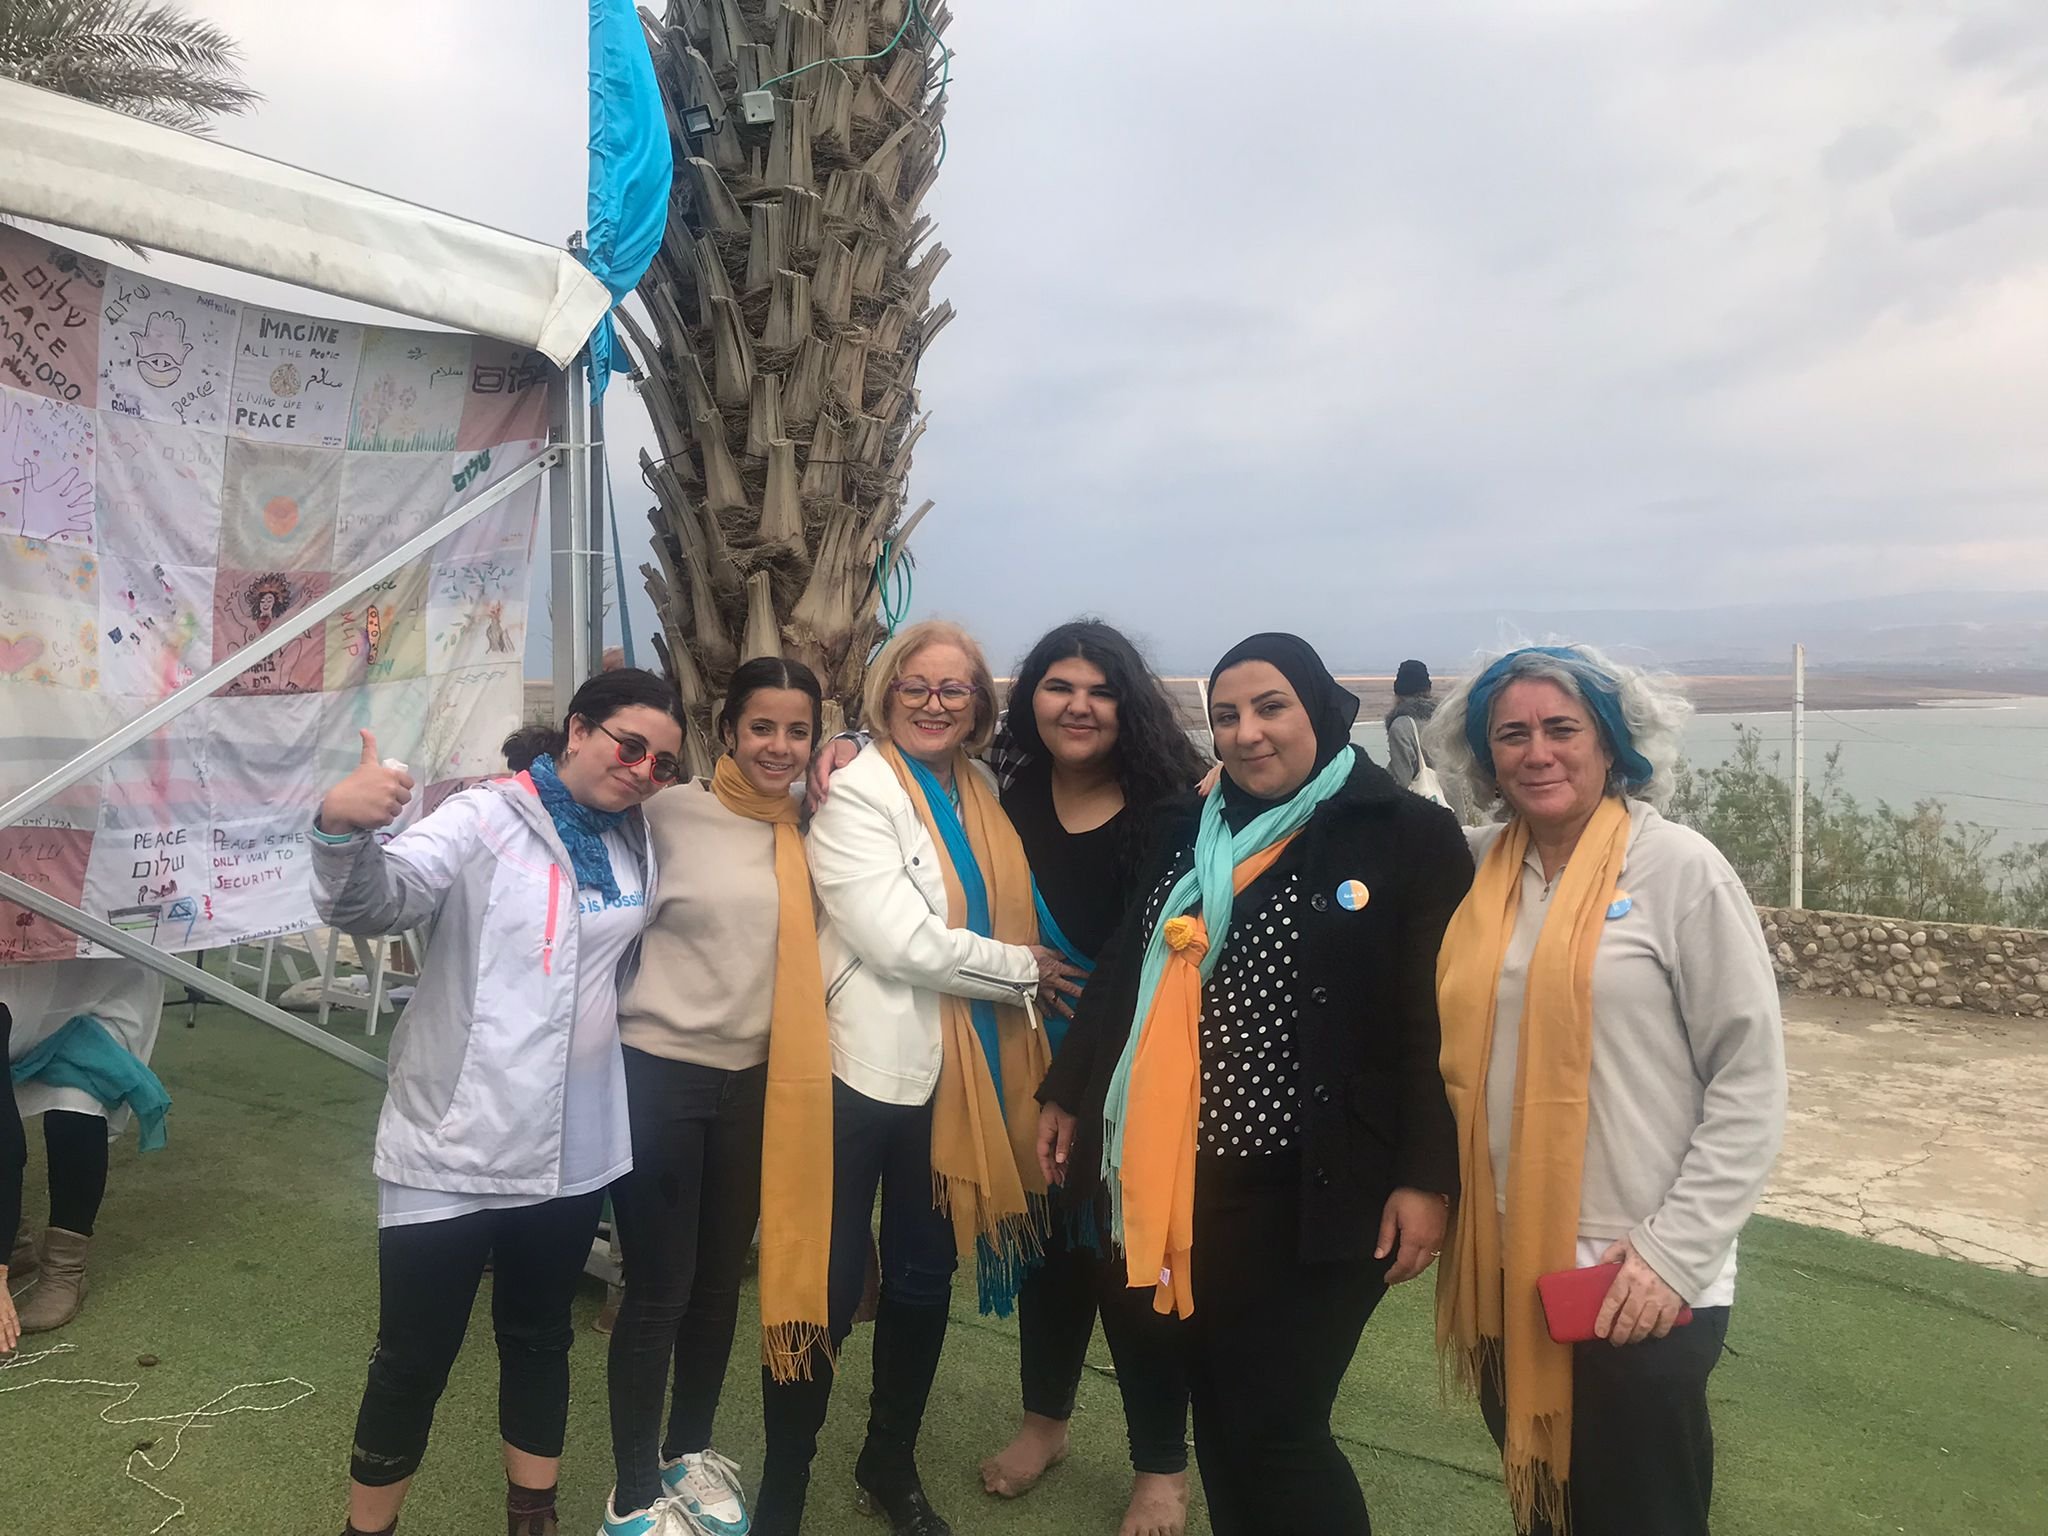 البحر الميت : الإعلان عن شراكة بين نساء فلسطينيات وإسرائيليات لتحقيق السلام-0